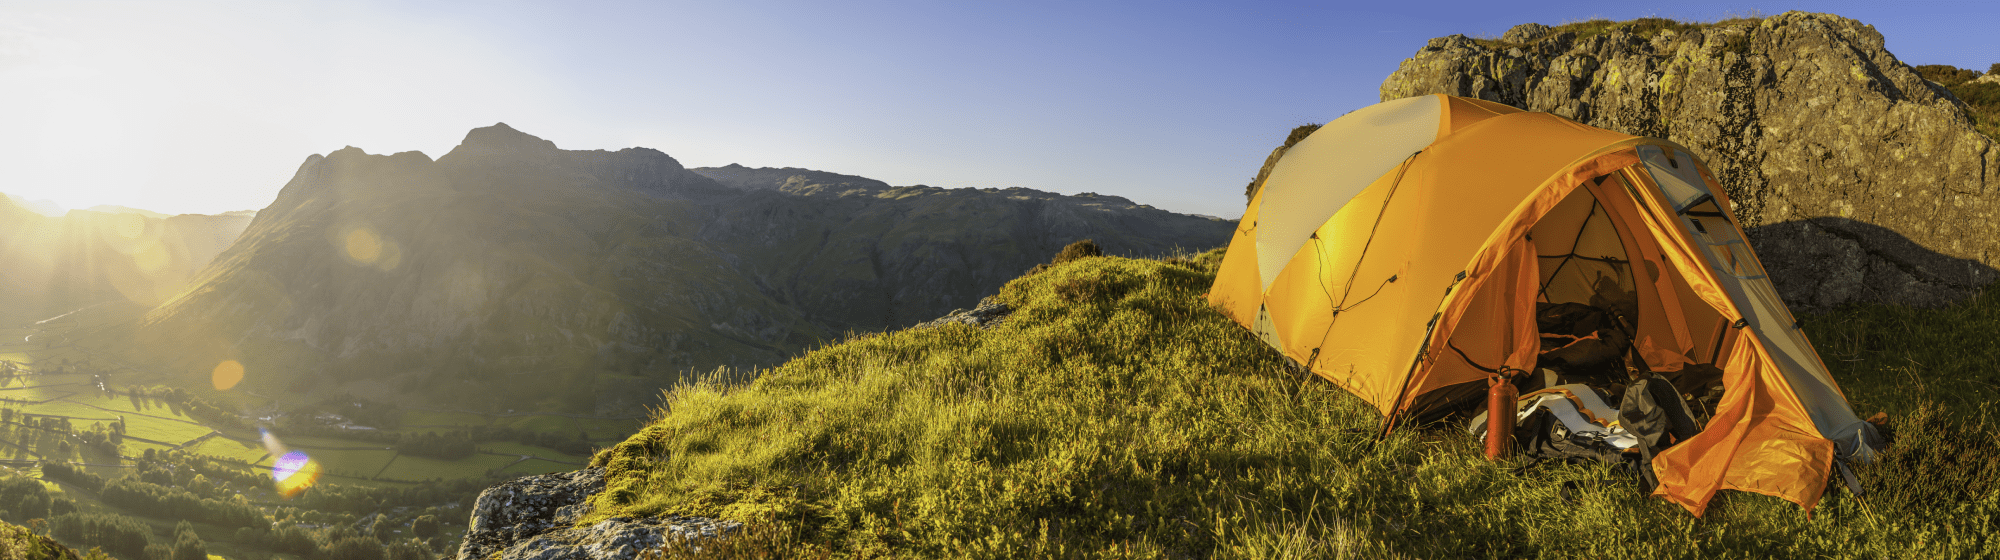 Tente en haut de la montagne surplombant la vallée du coucher du soleil